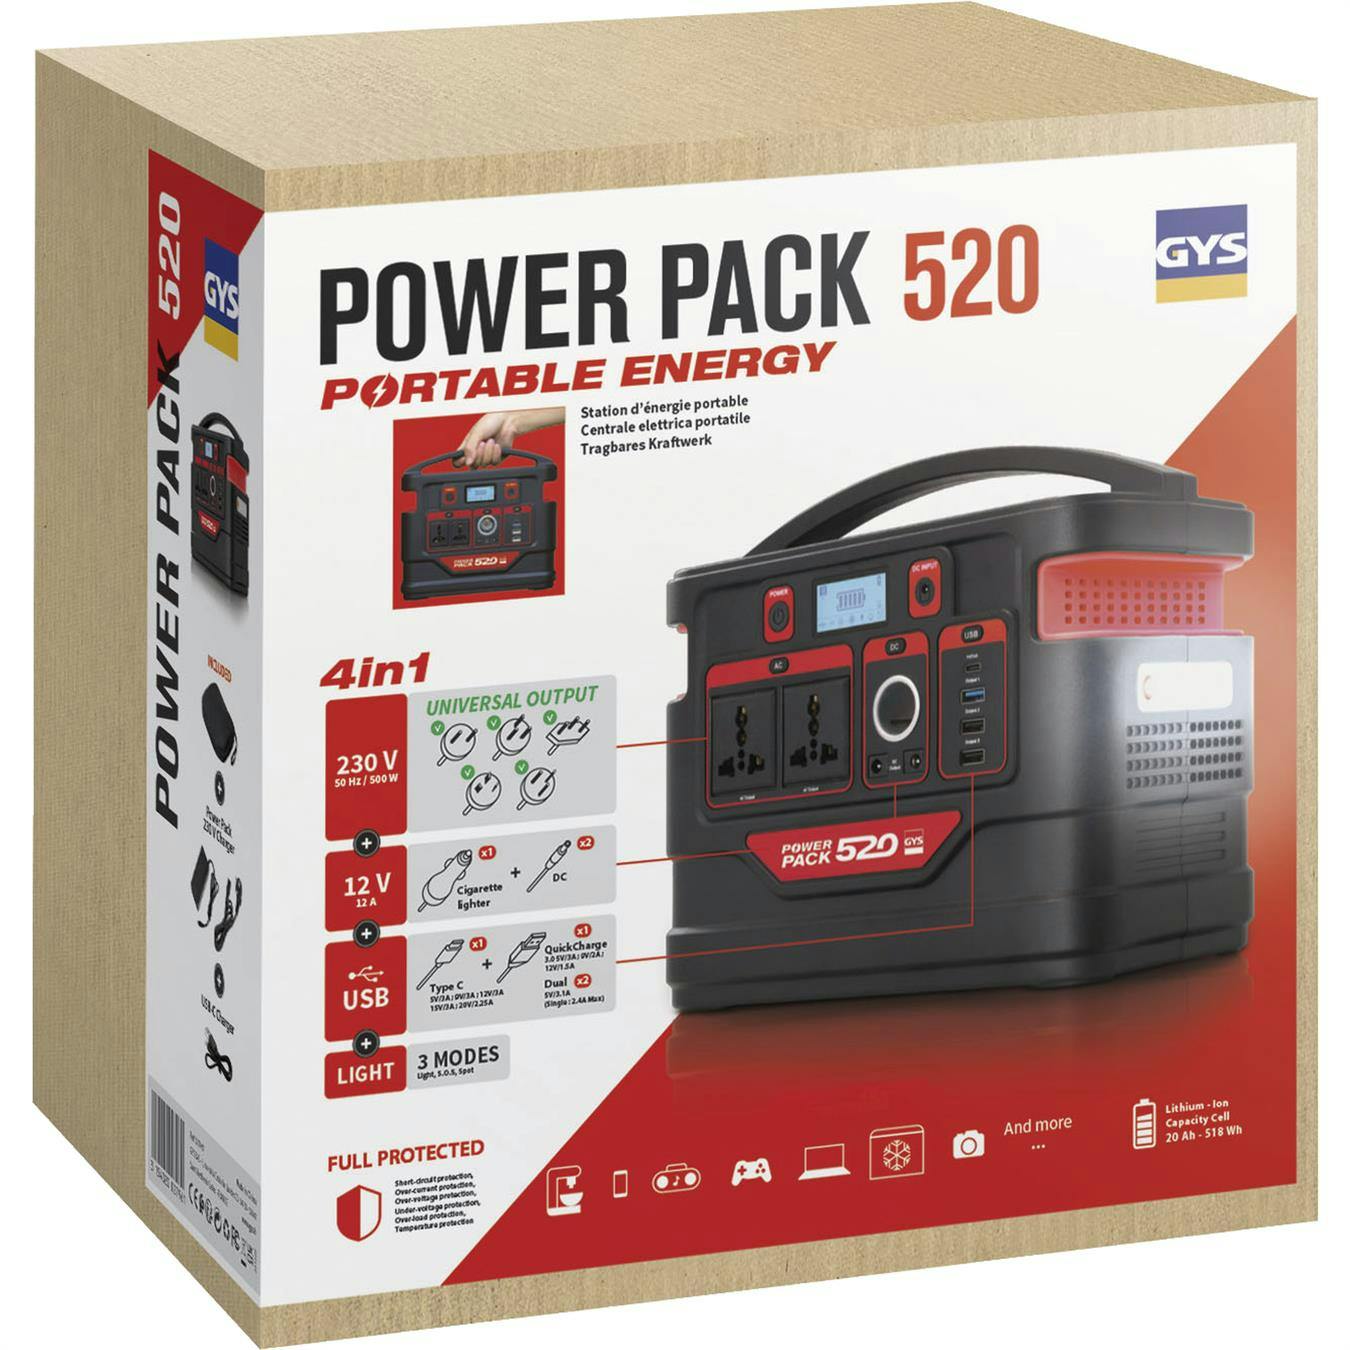 Power pack 520 - GYS - Batteribank för alla behov